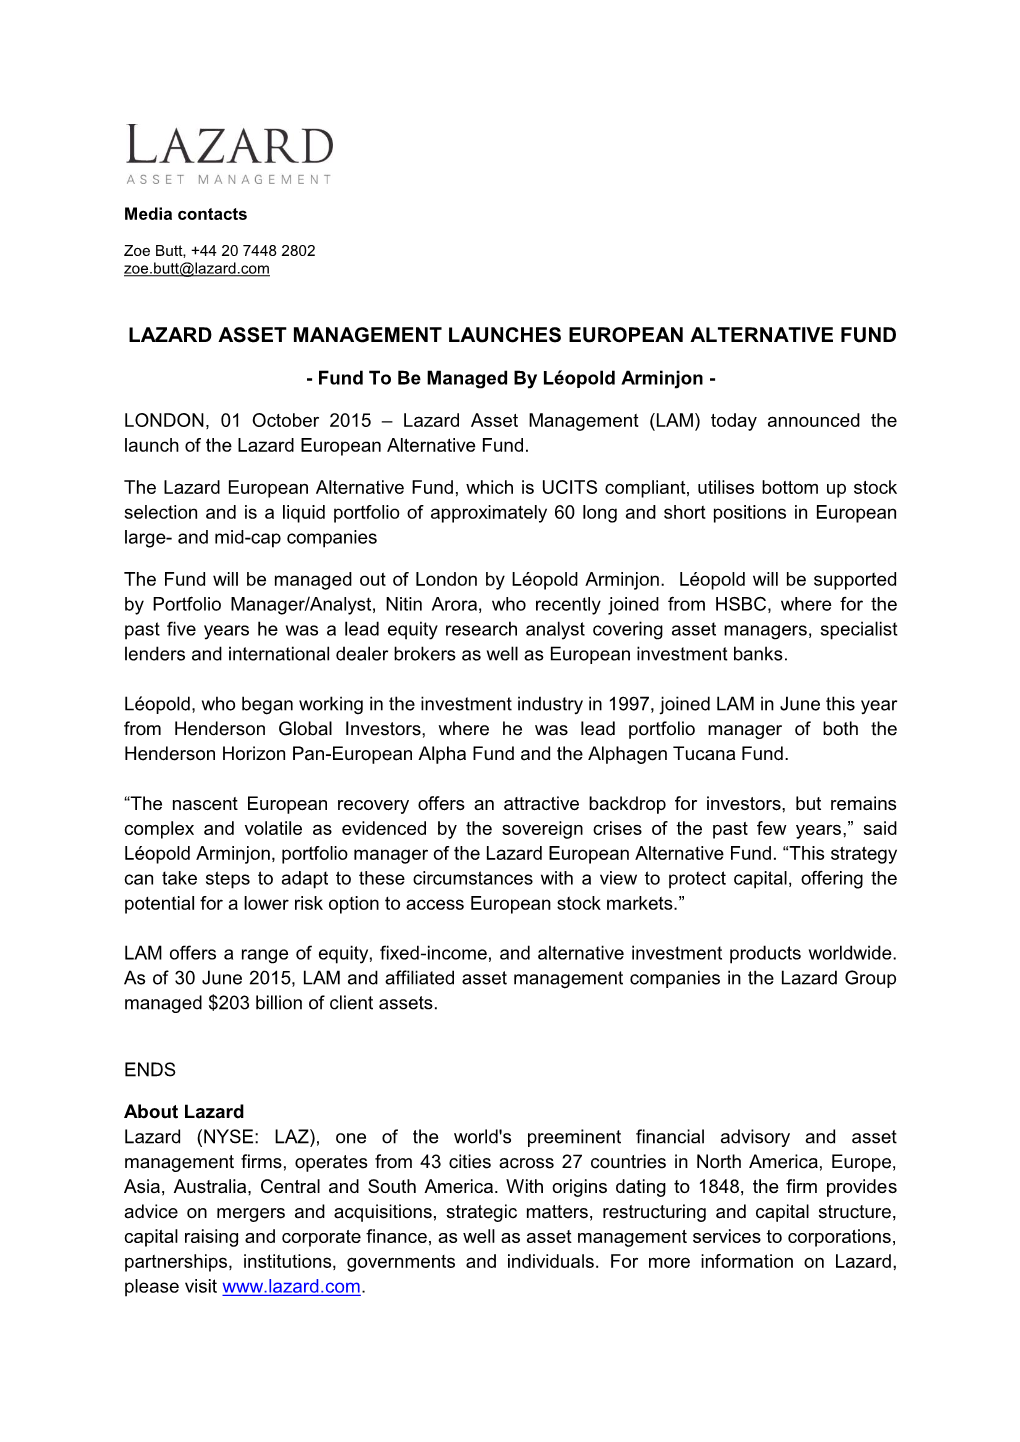 Lazard Asset Management Launches European Alternative Fund